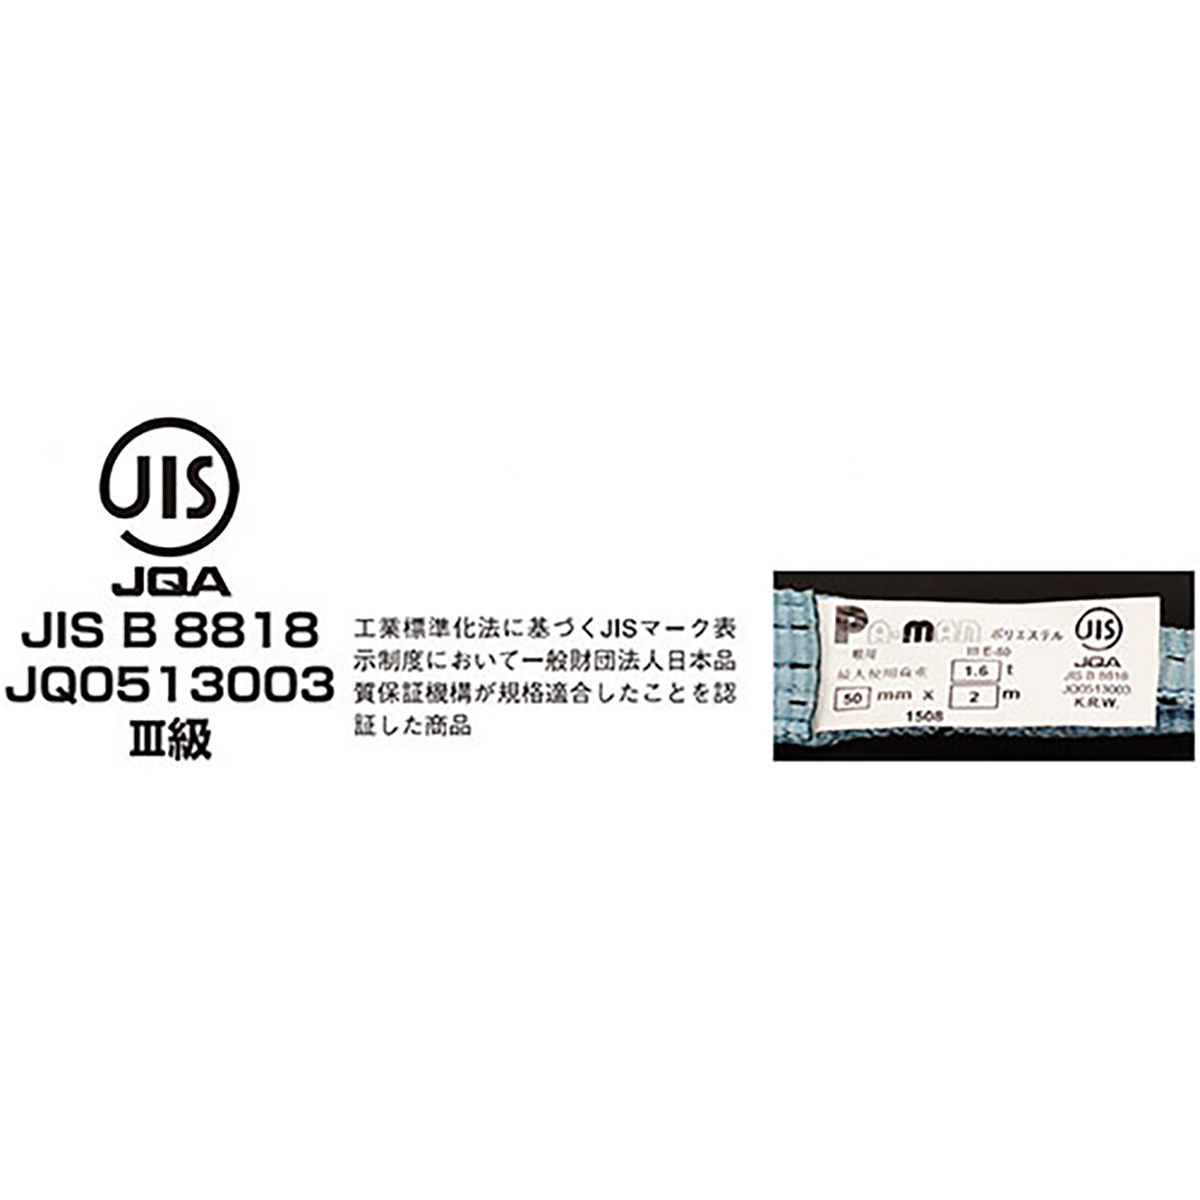 ポリベルトスリング JIS III級 ソフト面付 巾35mm 6m 1本